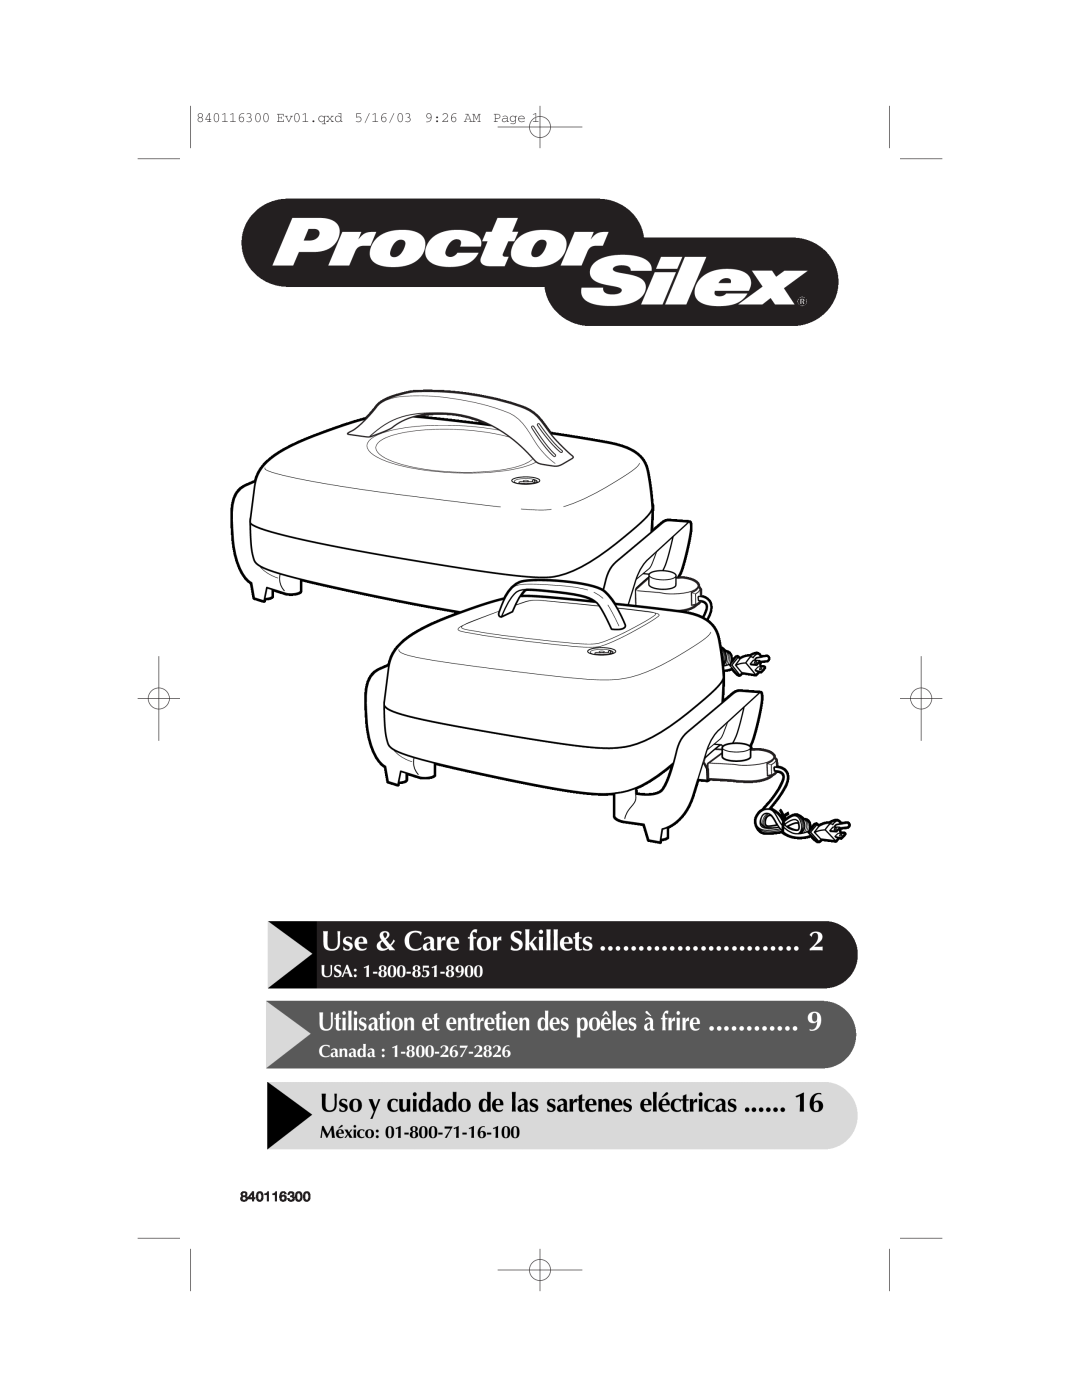 Proctor-Silex 840116300 manual Use & Care for Skillets, Uso y cuidado de las sartenes eléctricas, Usa, Canada, México 